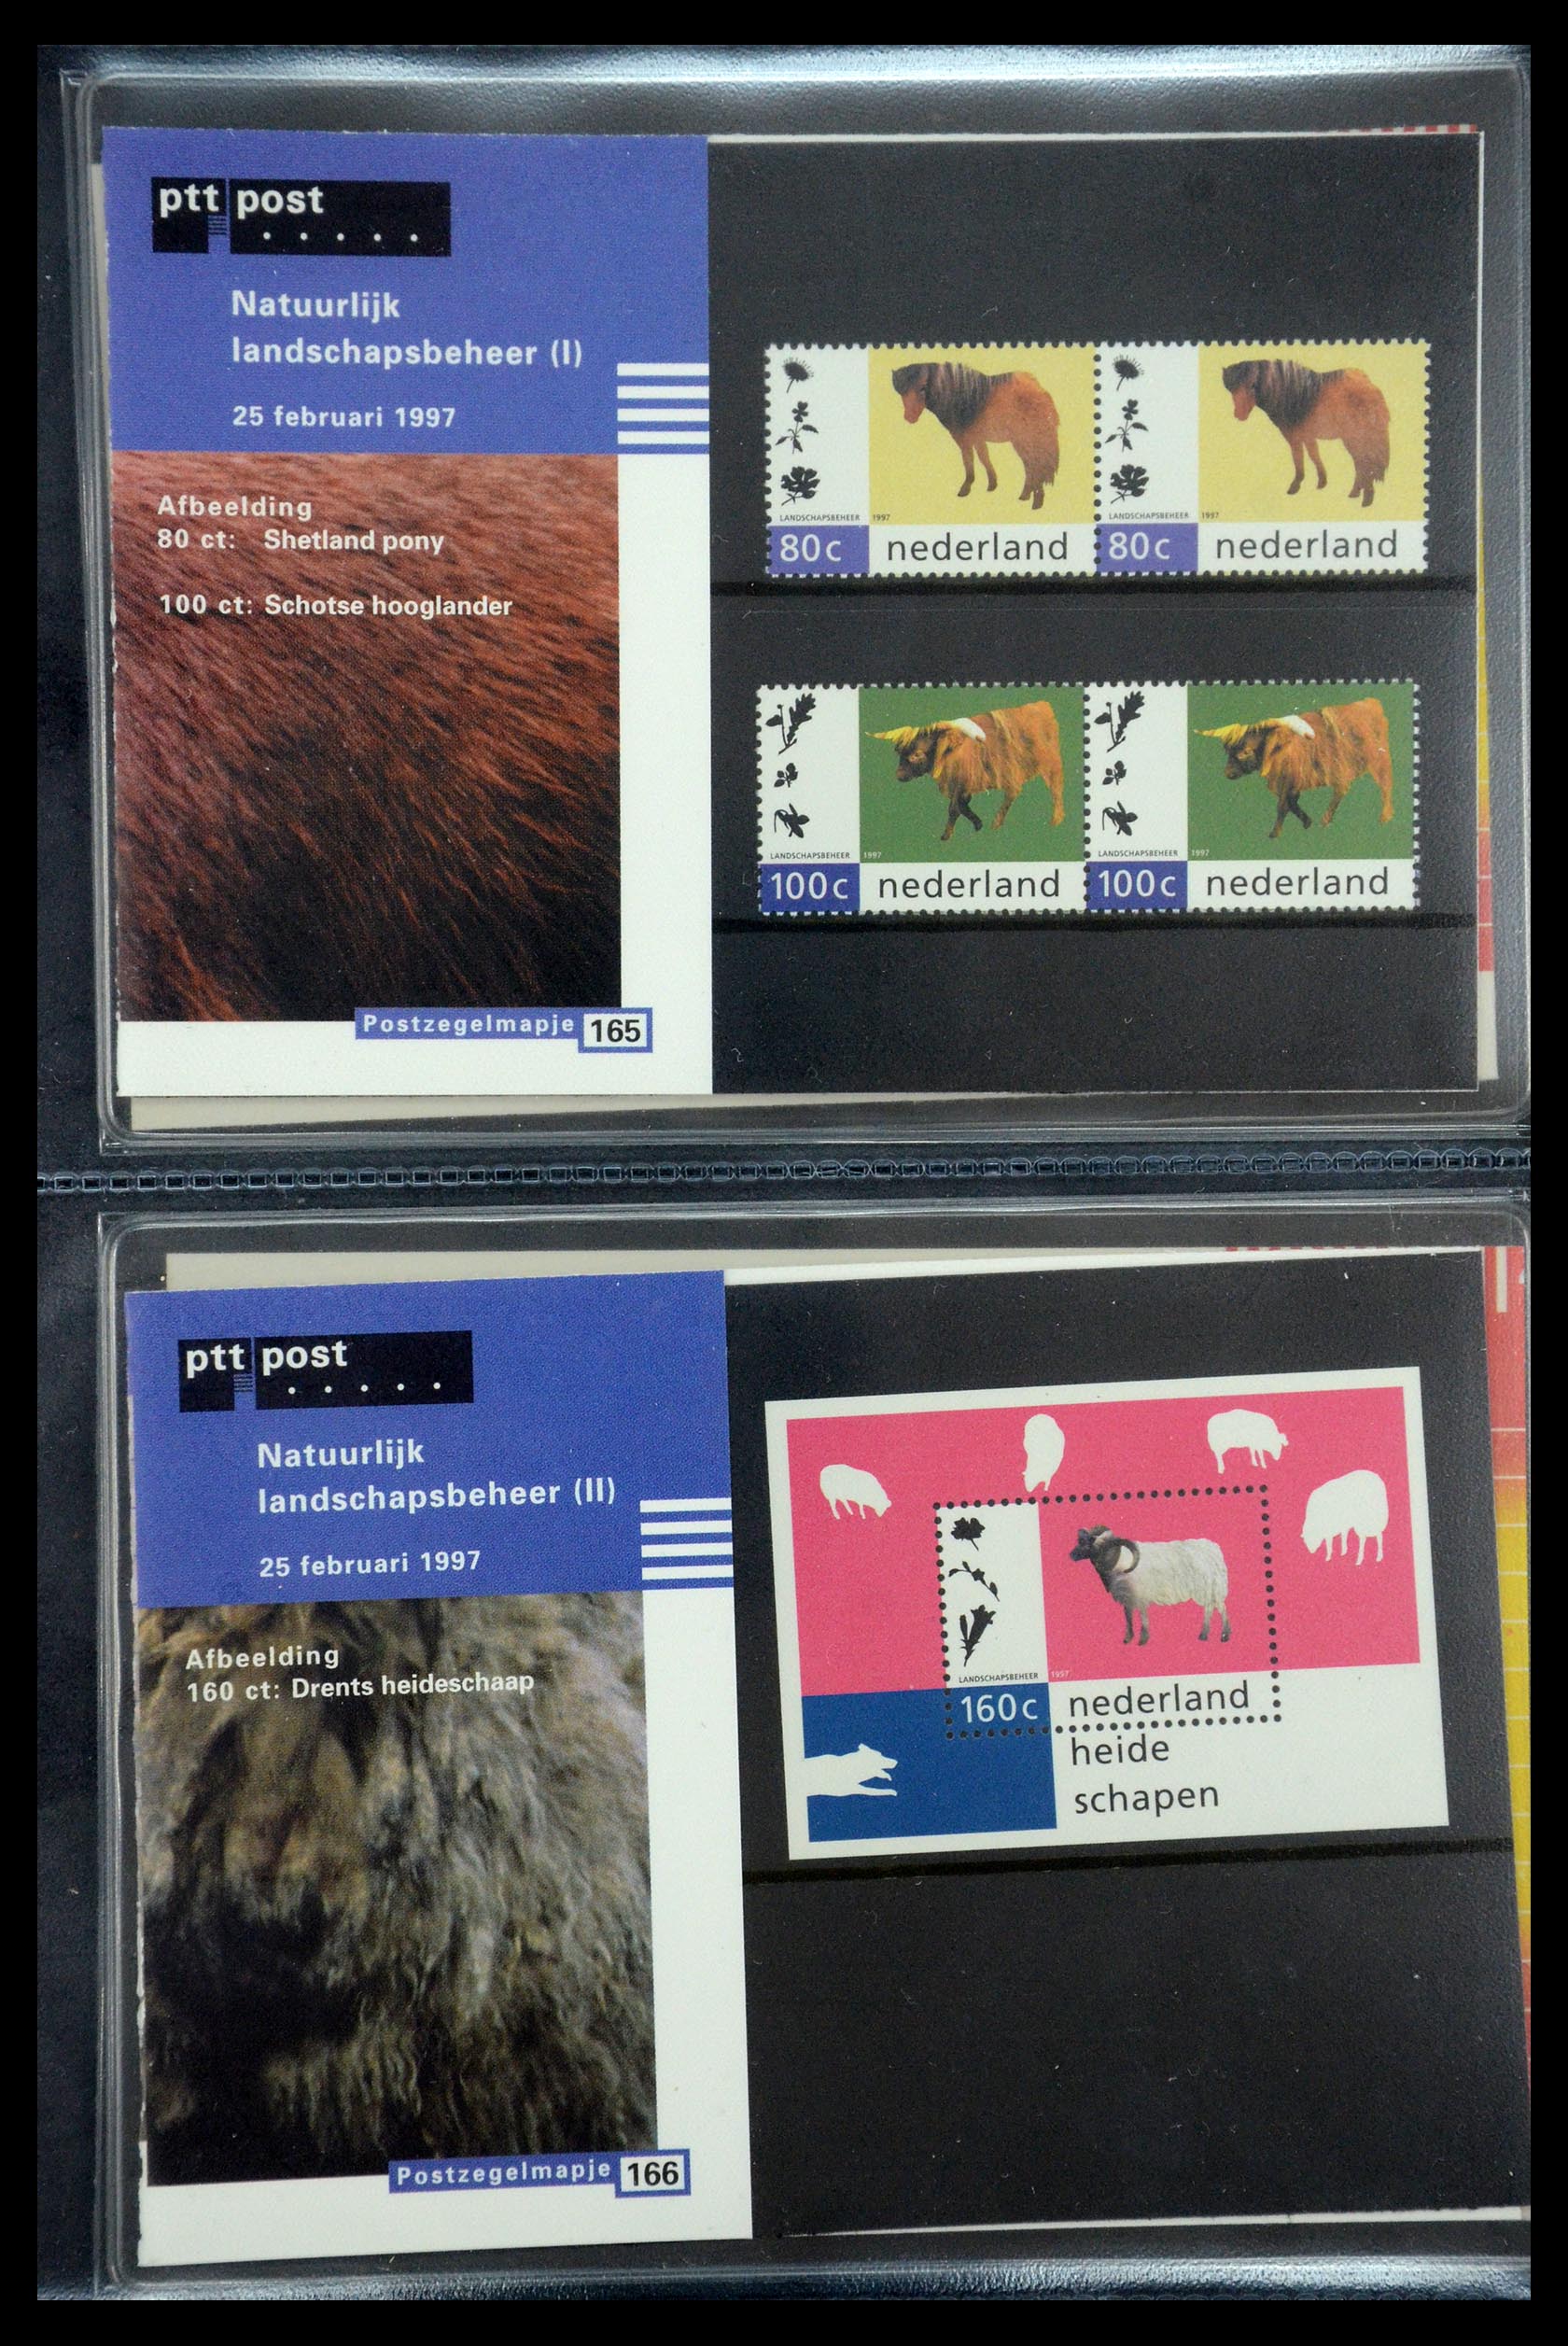 35187 085 - Stamp Collection 35187 Netherlands PTT presentation packs 1982-2019!